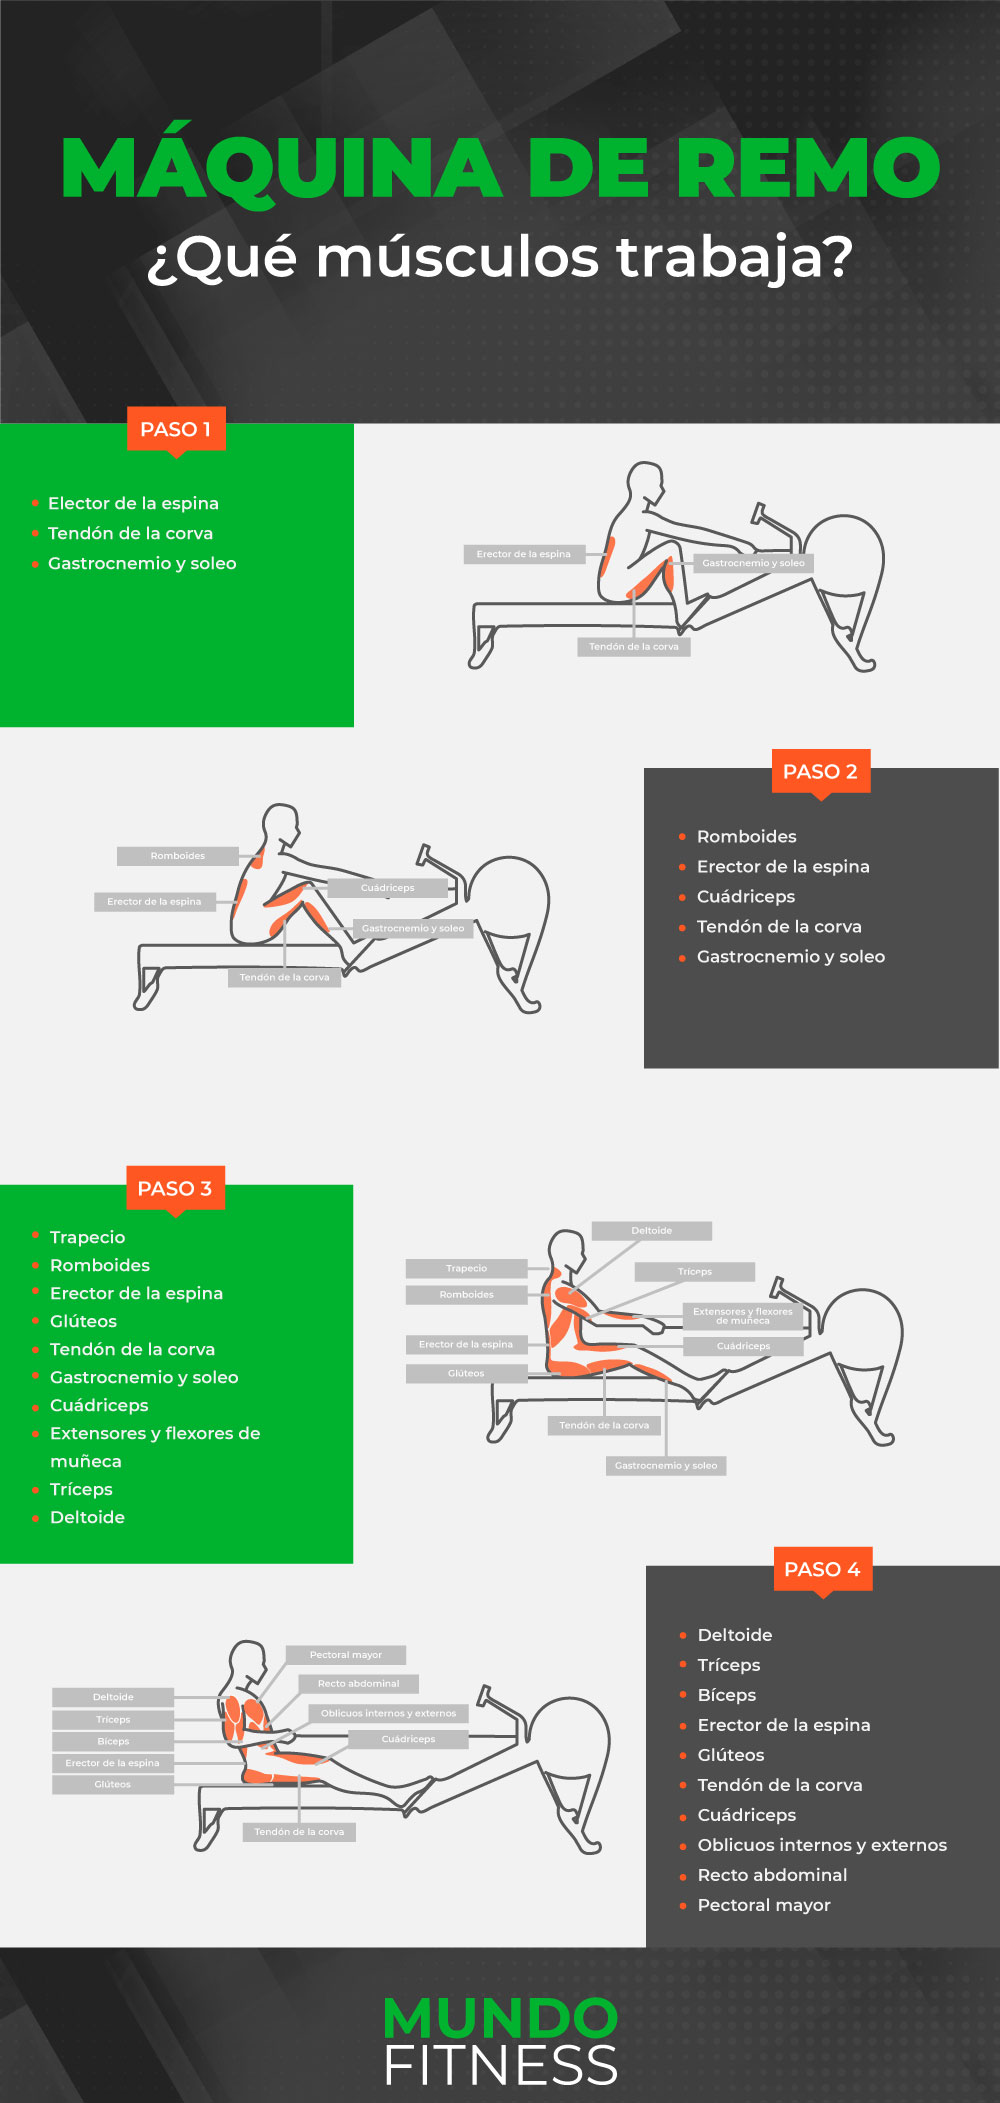 maquina-remo-que-musculos-trabaja-infografia